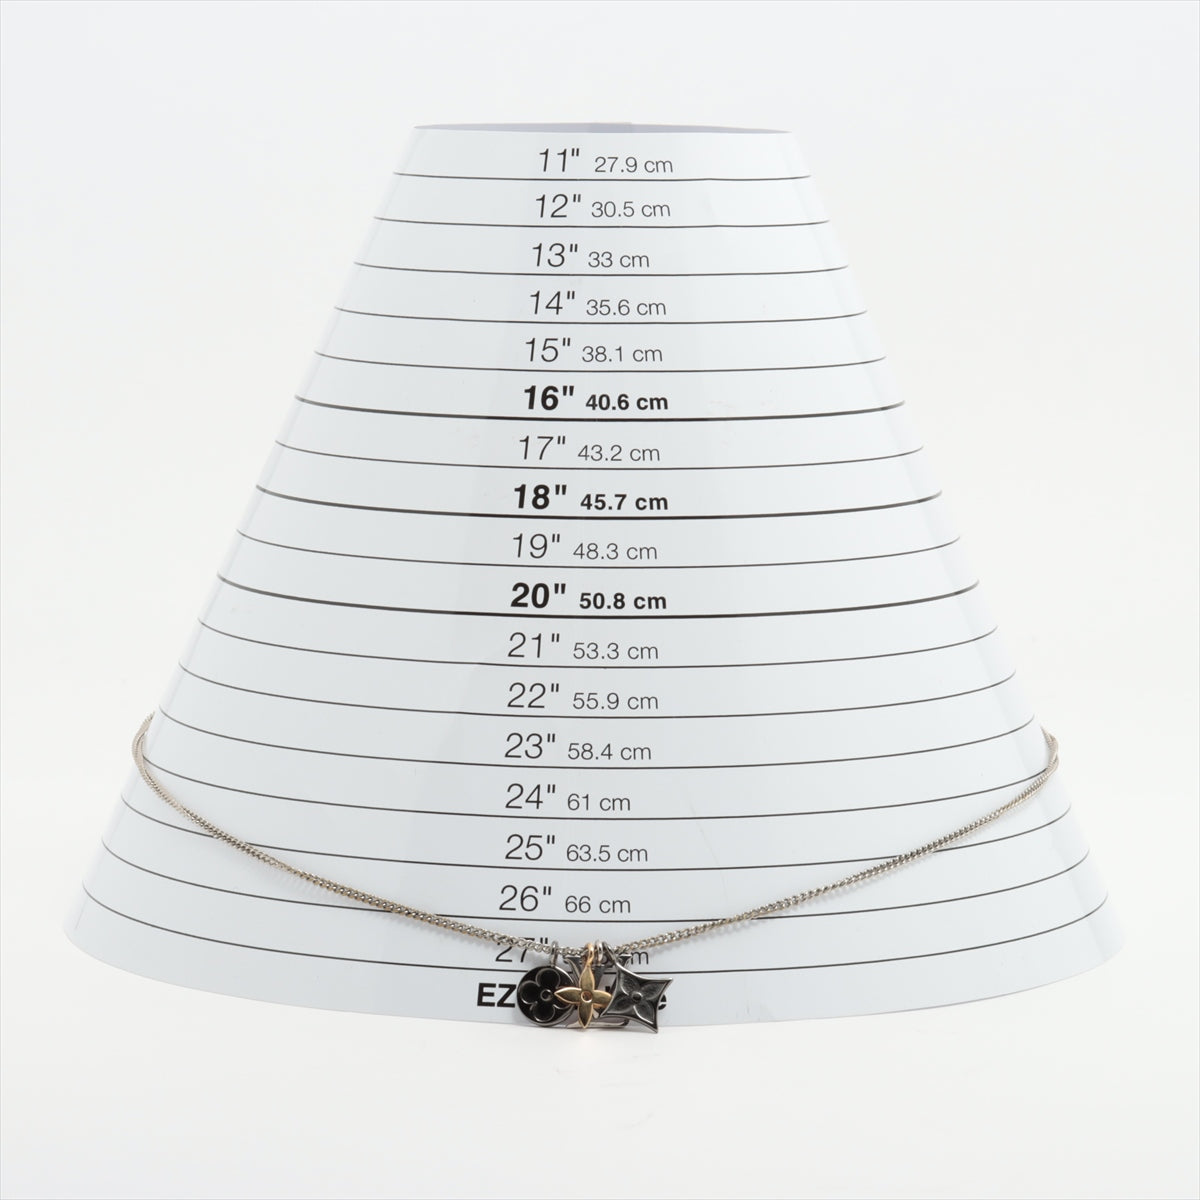 Louis Vuitton LV Instinct Pendant Necklace